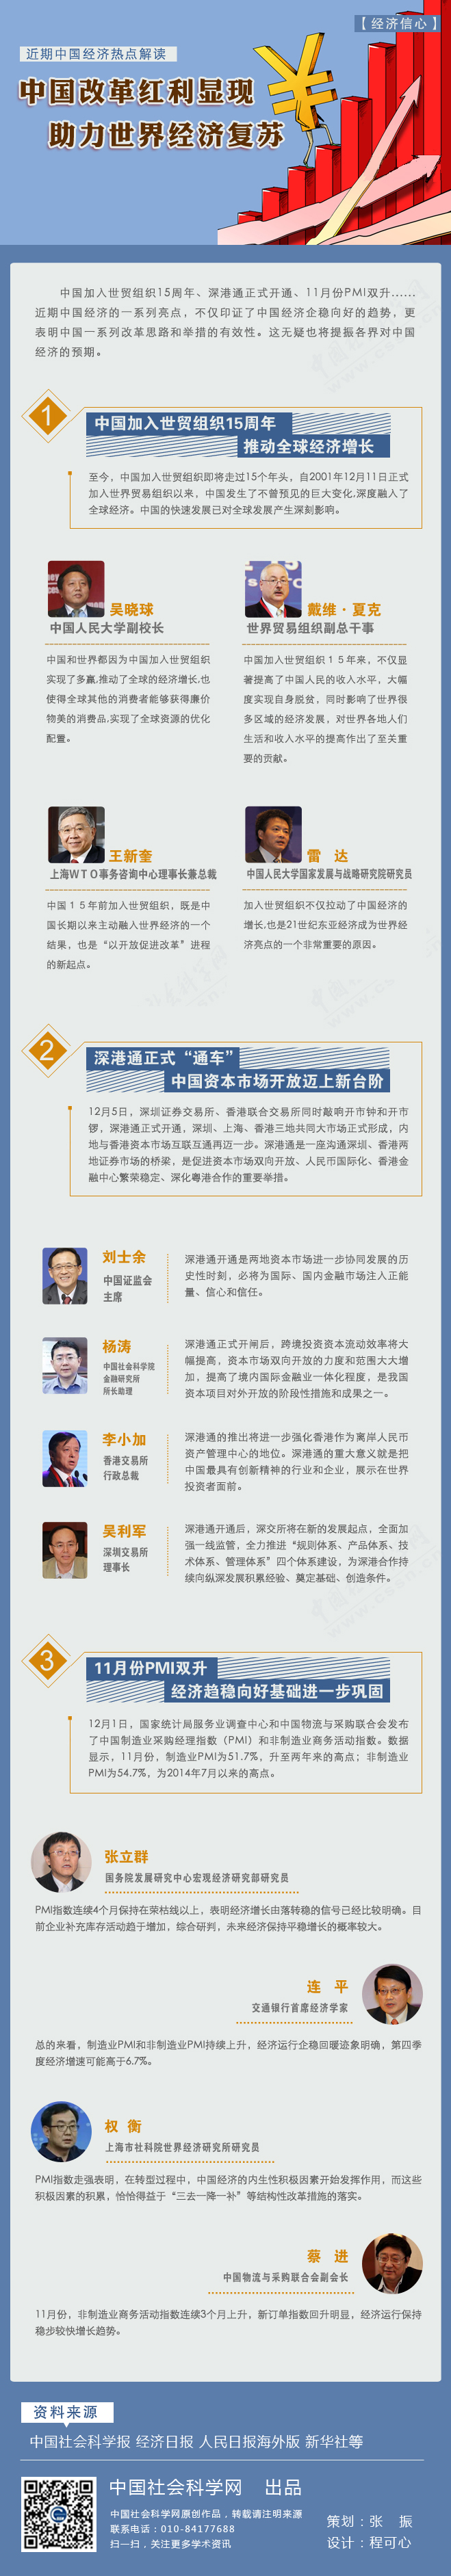 【经济信心】中国改革红利显现 助力世界经济复苏